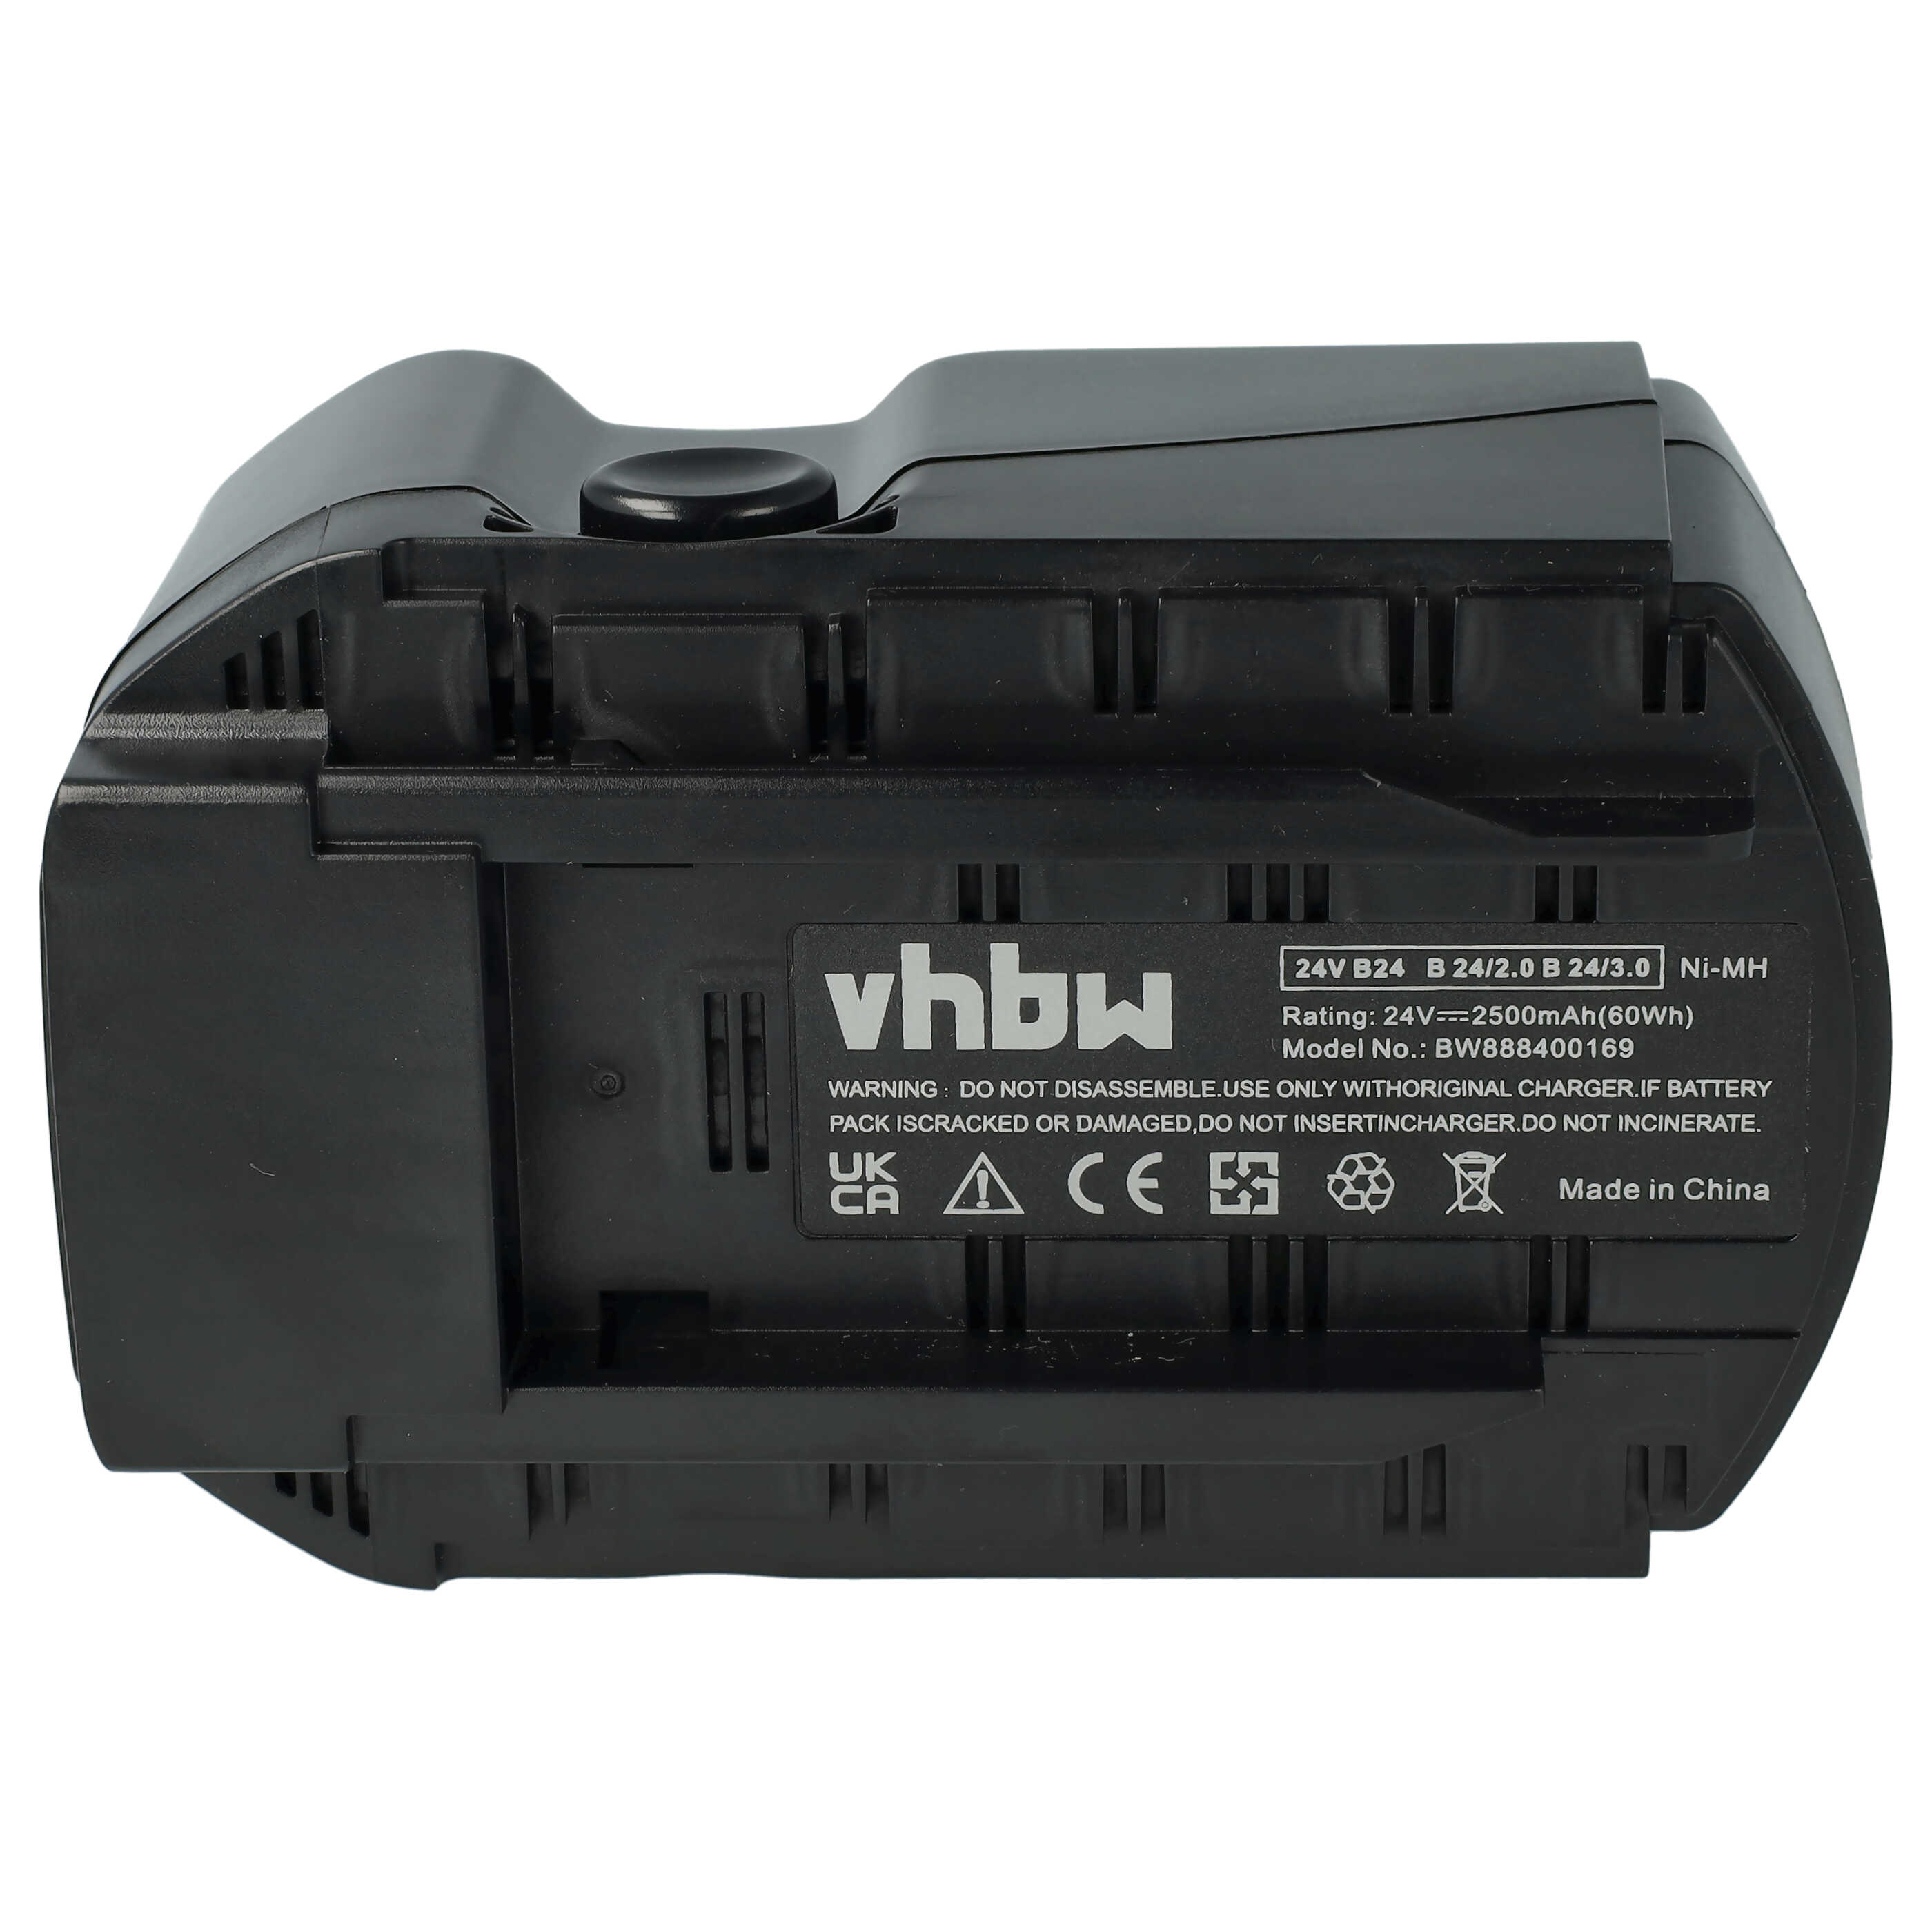 Batterie remplace Hilti B24/3.0, B24/2.0, B24 pour outil électrique - 2500 mAh, 24 V, NiMH